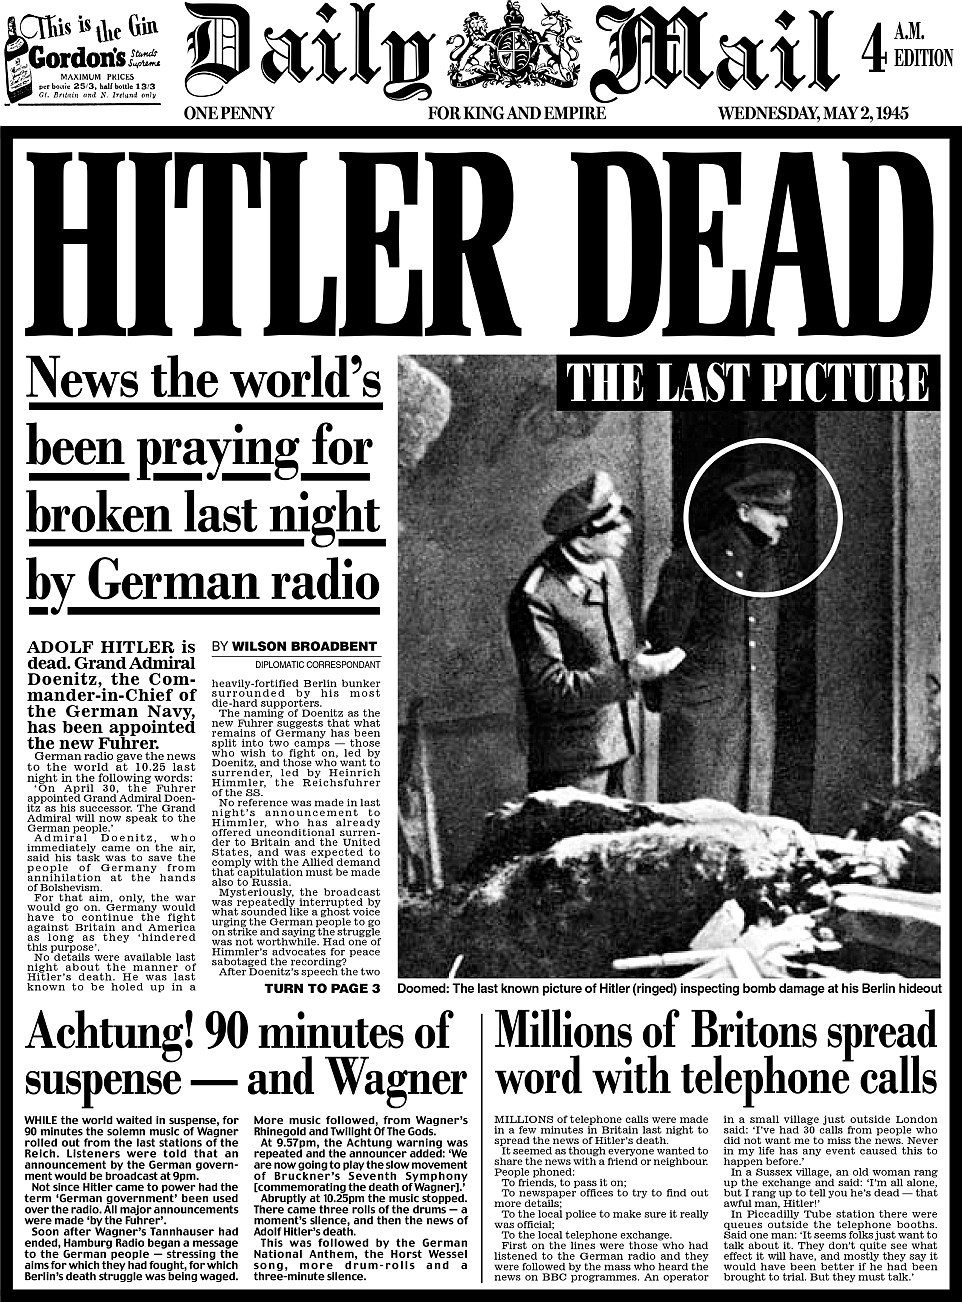 La dudosa versión oficial de la muerte de Hitler 2838850100000578-0-image-a-2_1430519794156